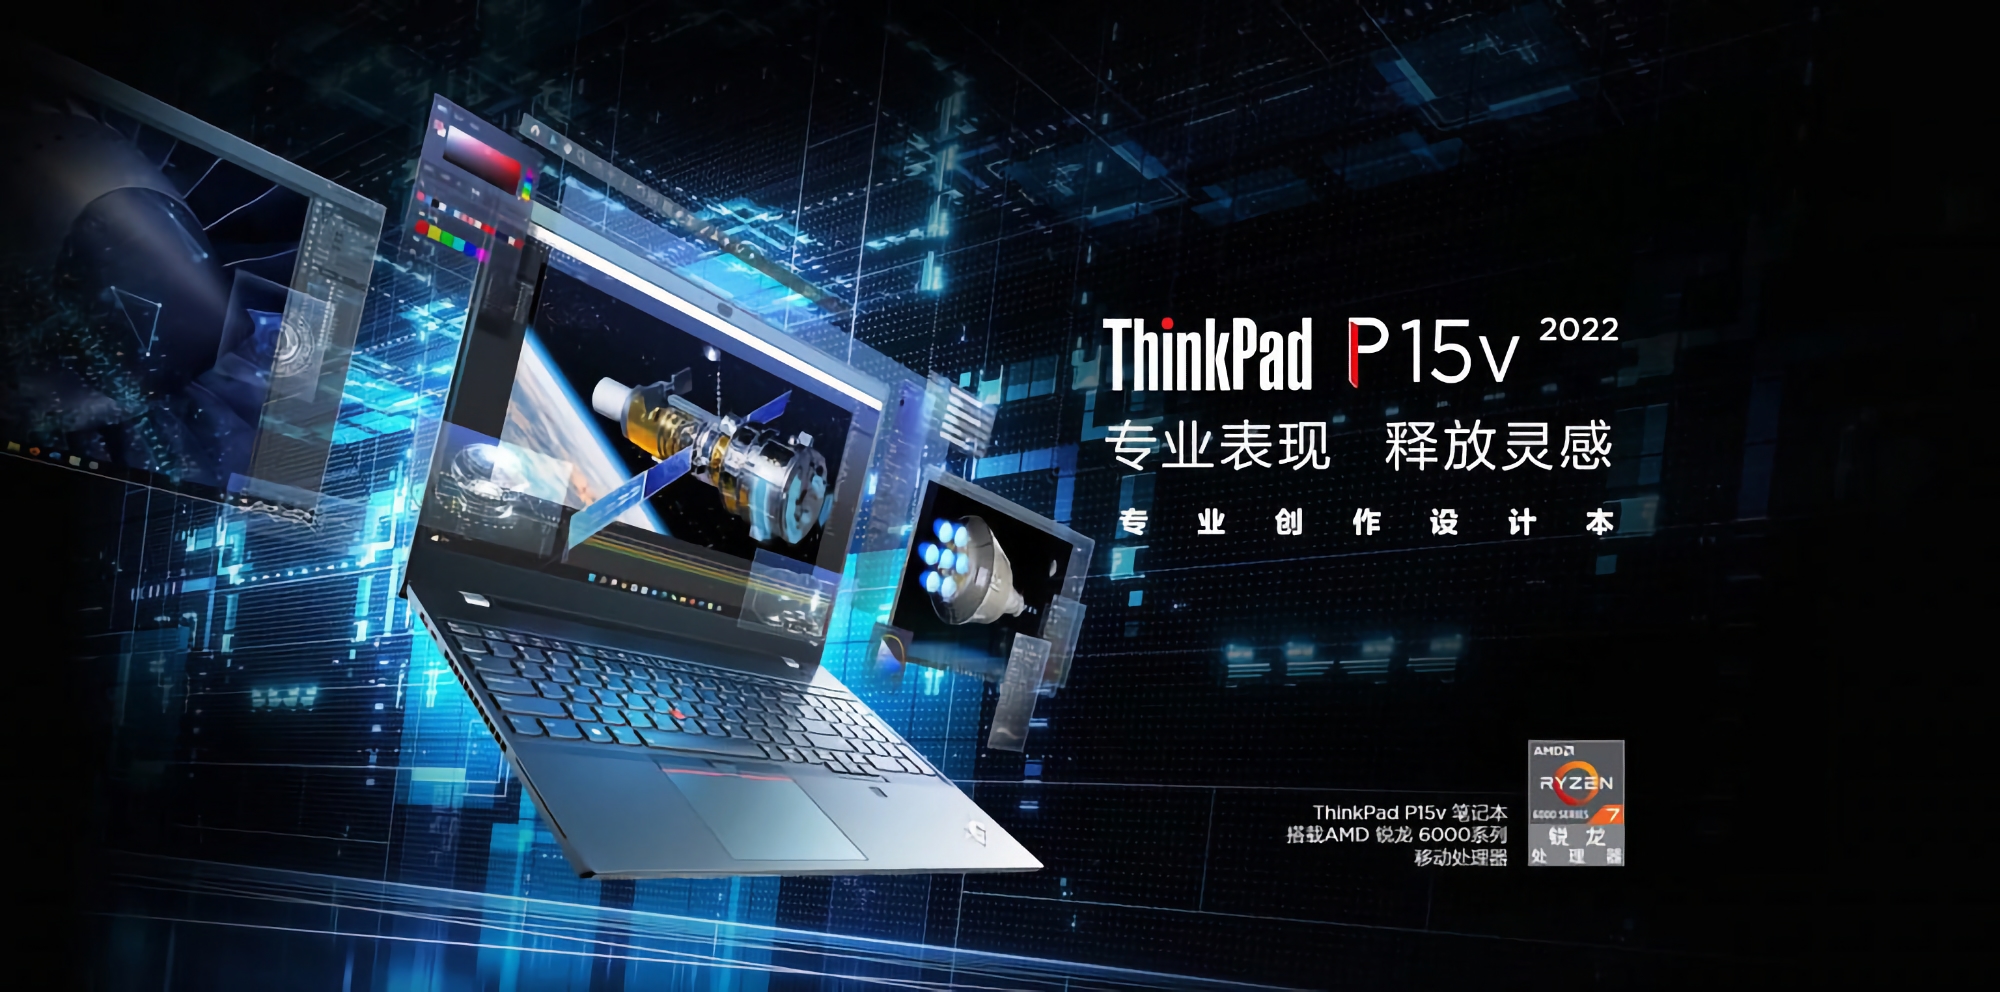 Lenovo ThinkPad P15v 2022 Ryzen Edition : Ordinateur portable de 15,6 pouces avec processeur AMD, jusqu'à 64 Go de RAM et carte graphique NVIDIA T600, à partir de 1095 $.